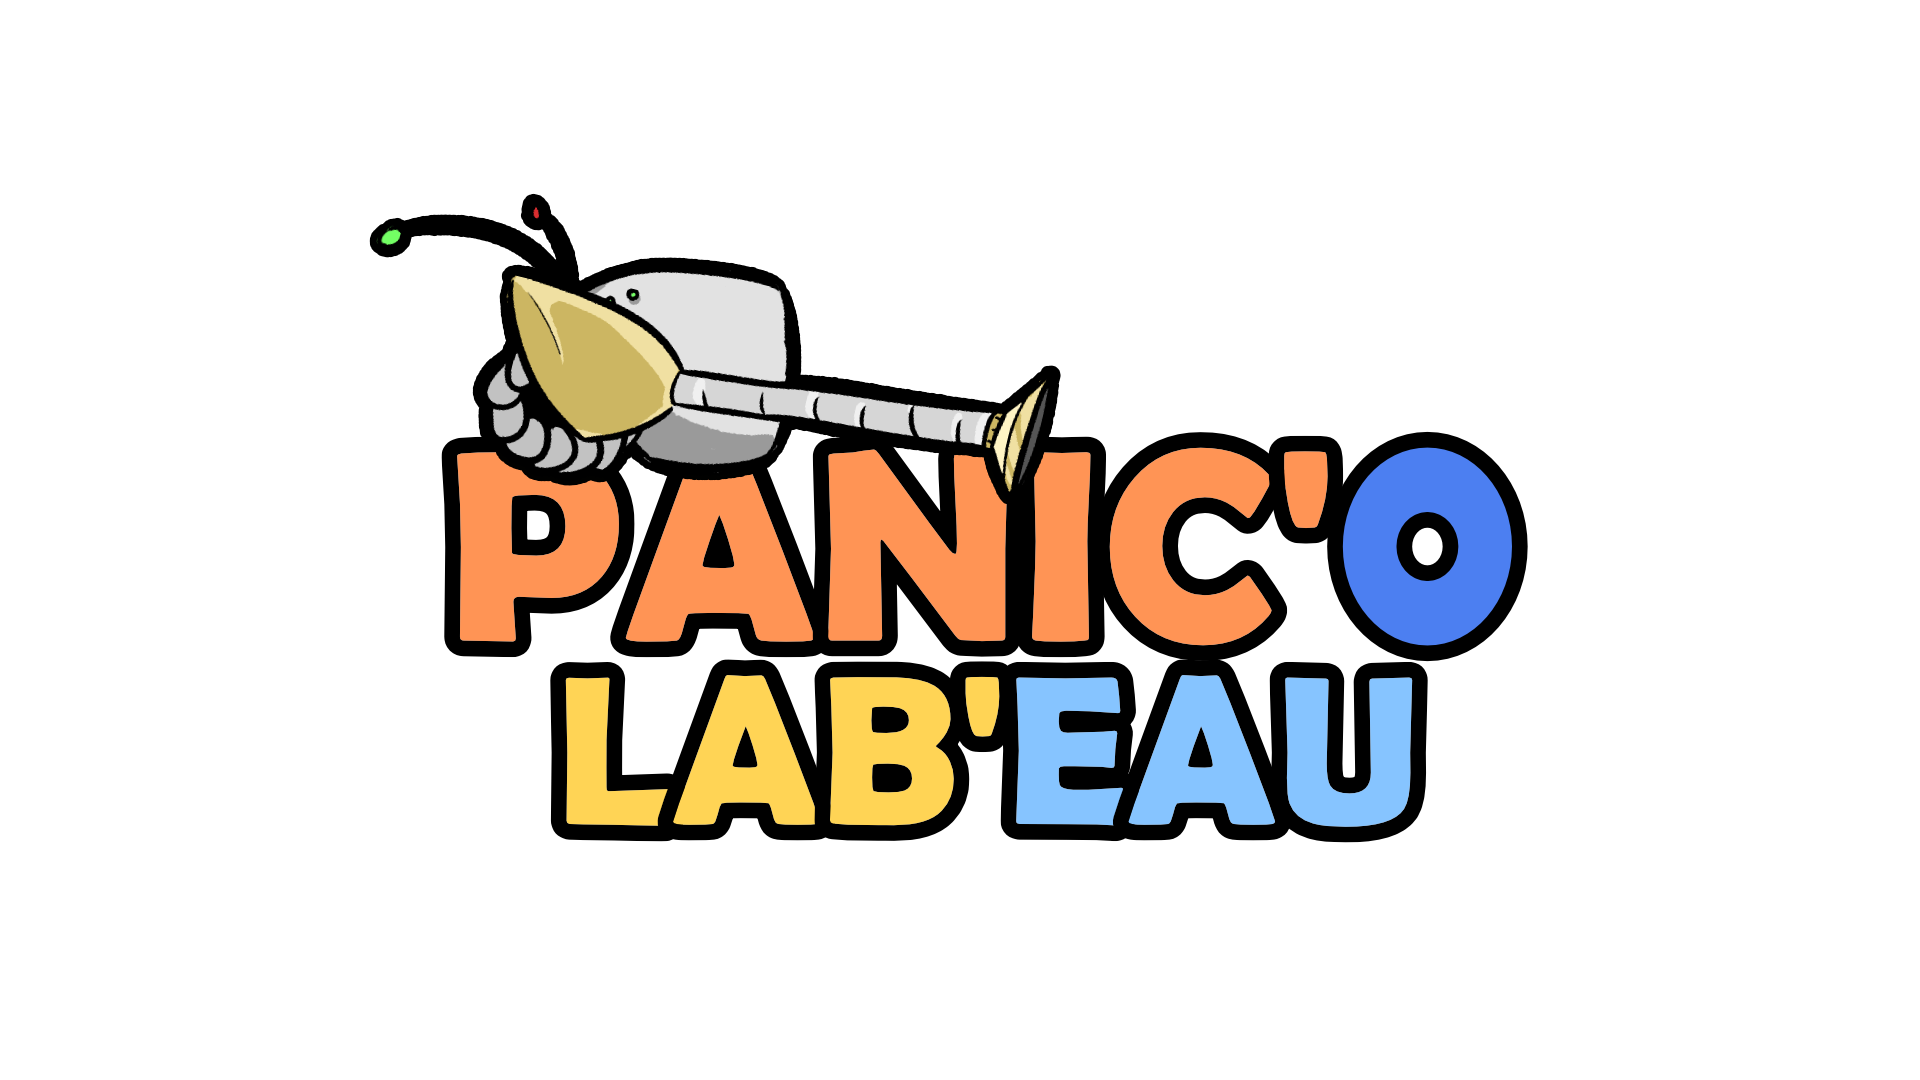 Panic'O Lab'eau